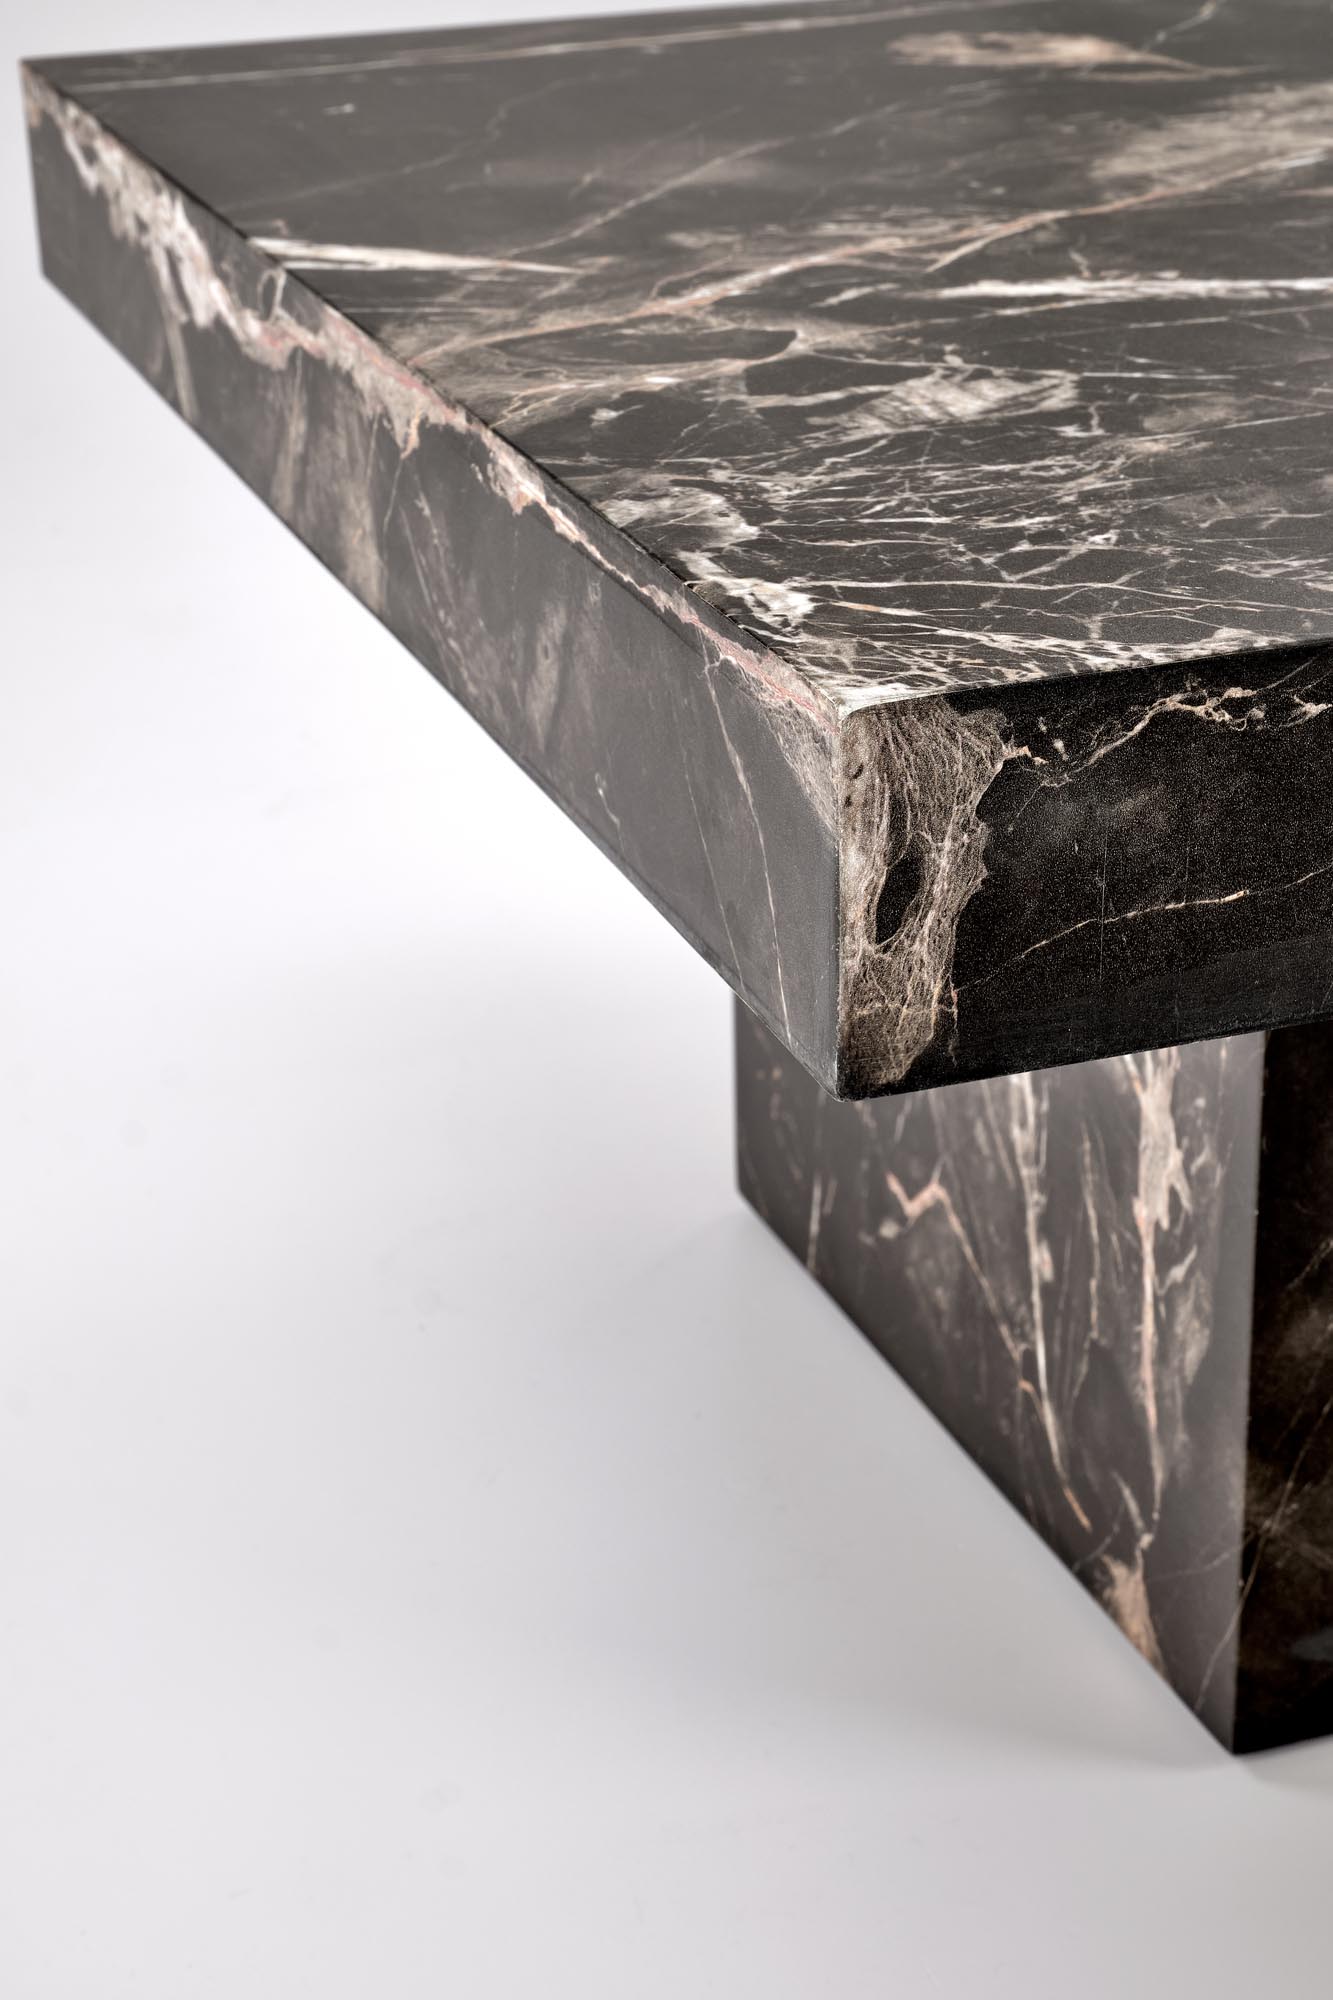 MONOLIT Konferenční stolek Fekete mramor stolek kawowy monolit - Fekete mramor